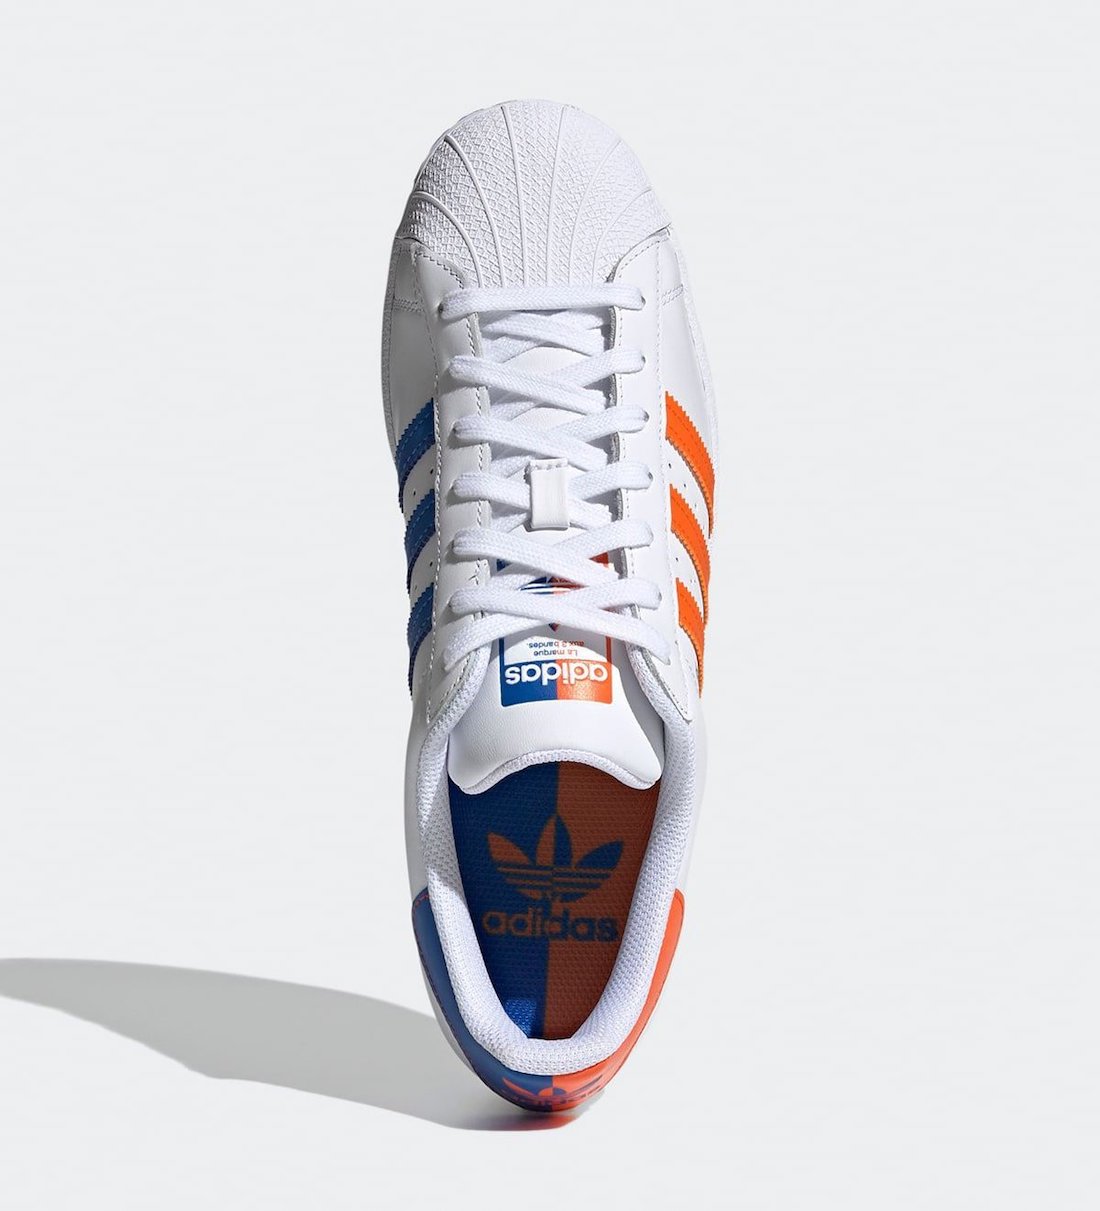 adidas Superstar Knicks FX5526 Release Date Info